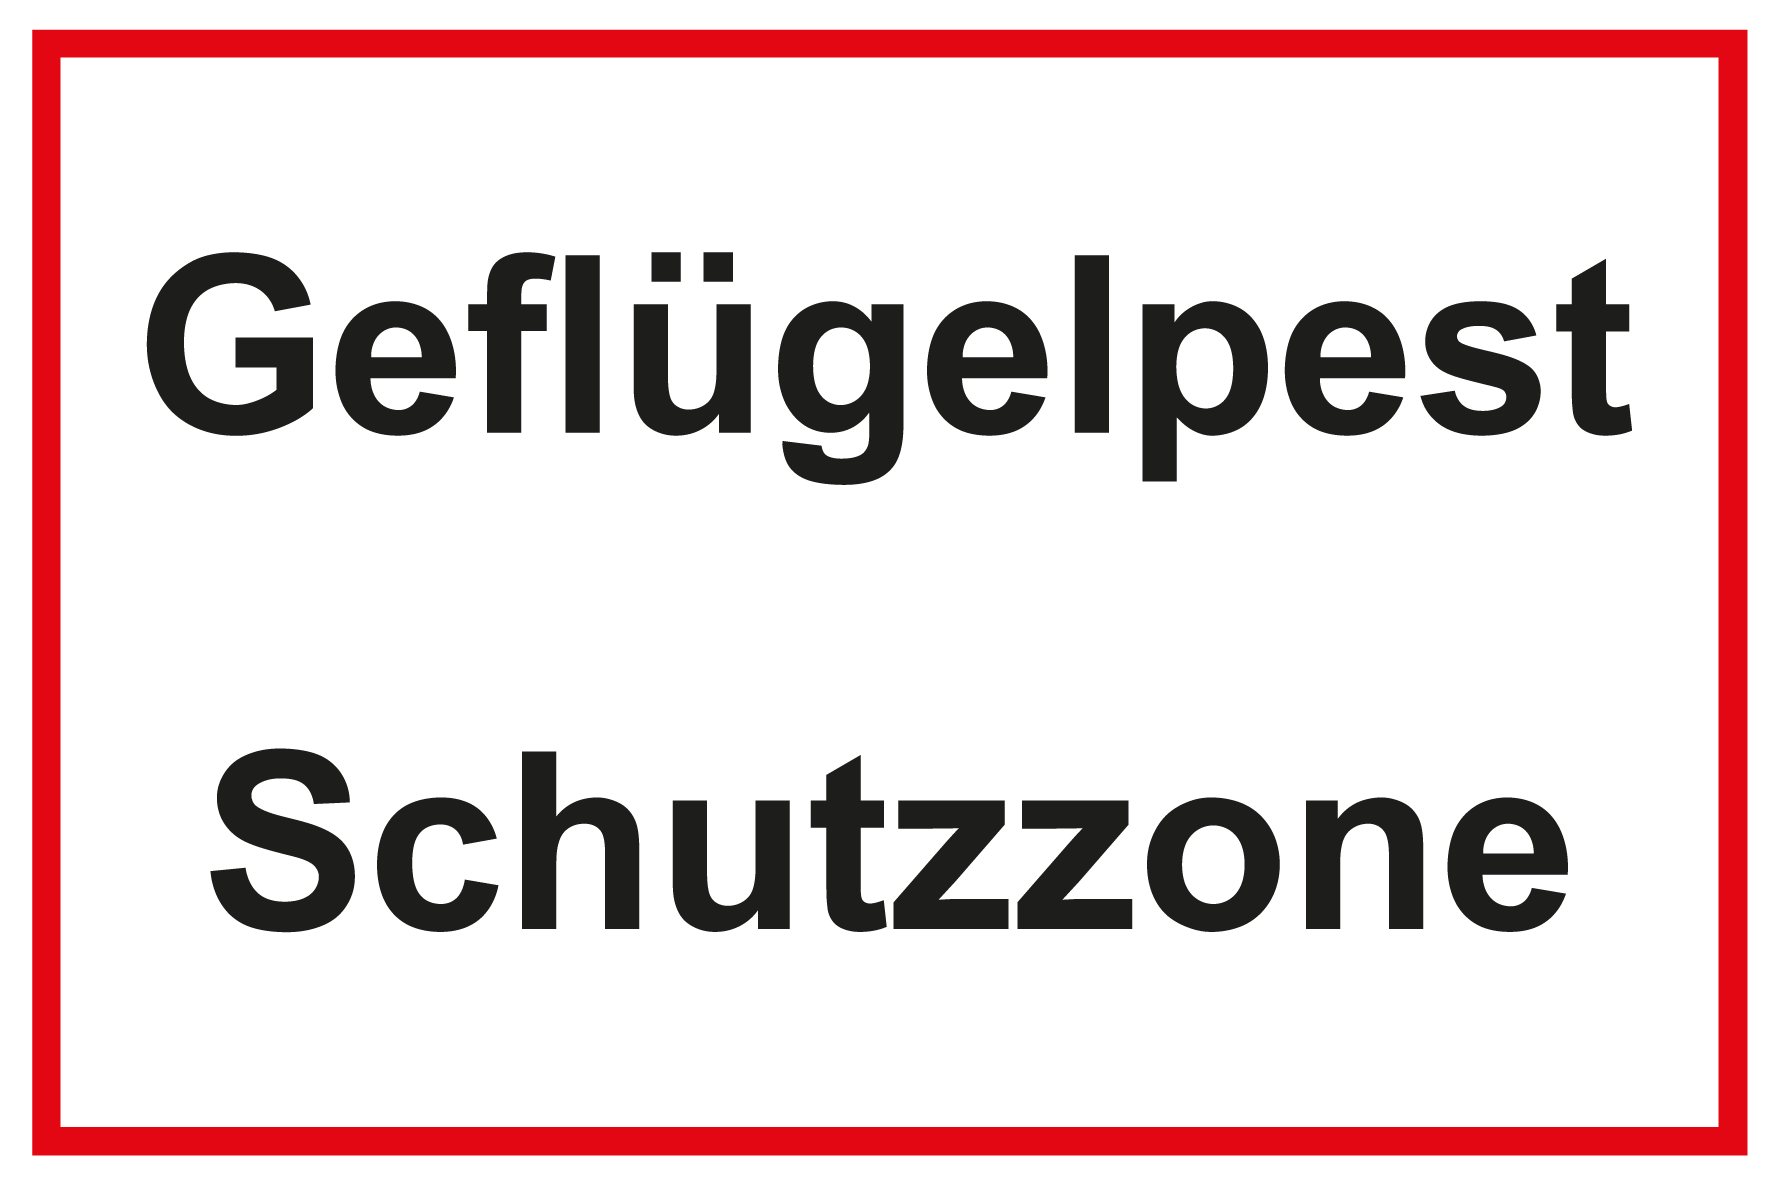 Hinweisschild - Geflügelpest Schutzzone  - Folie Selbstklebend - 20 x 30 cm